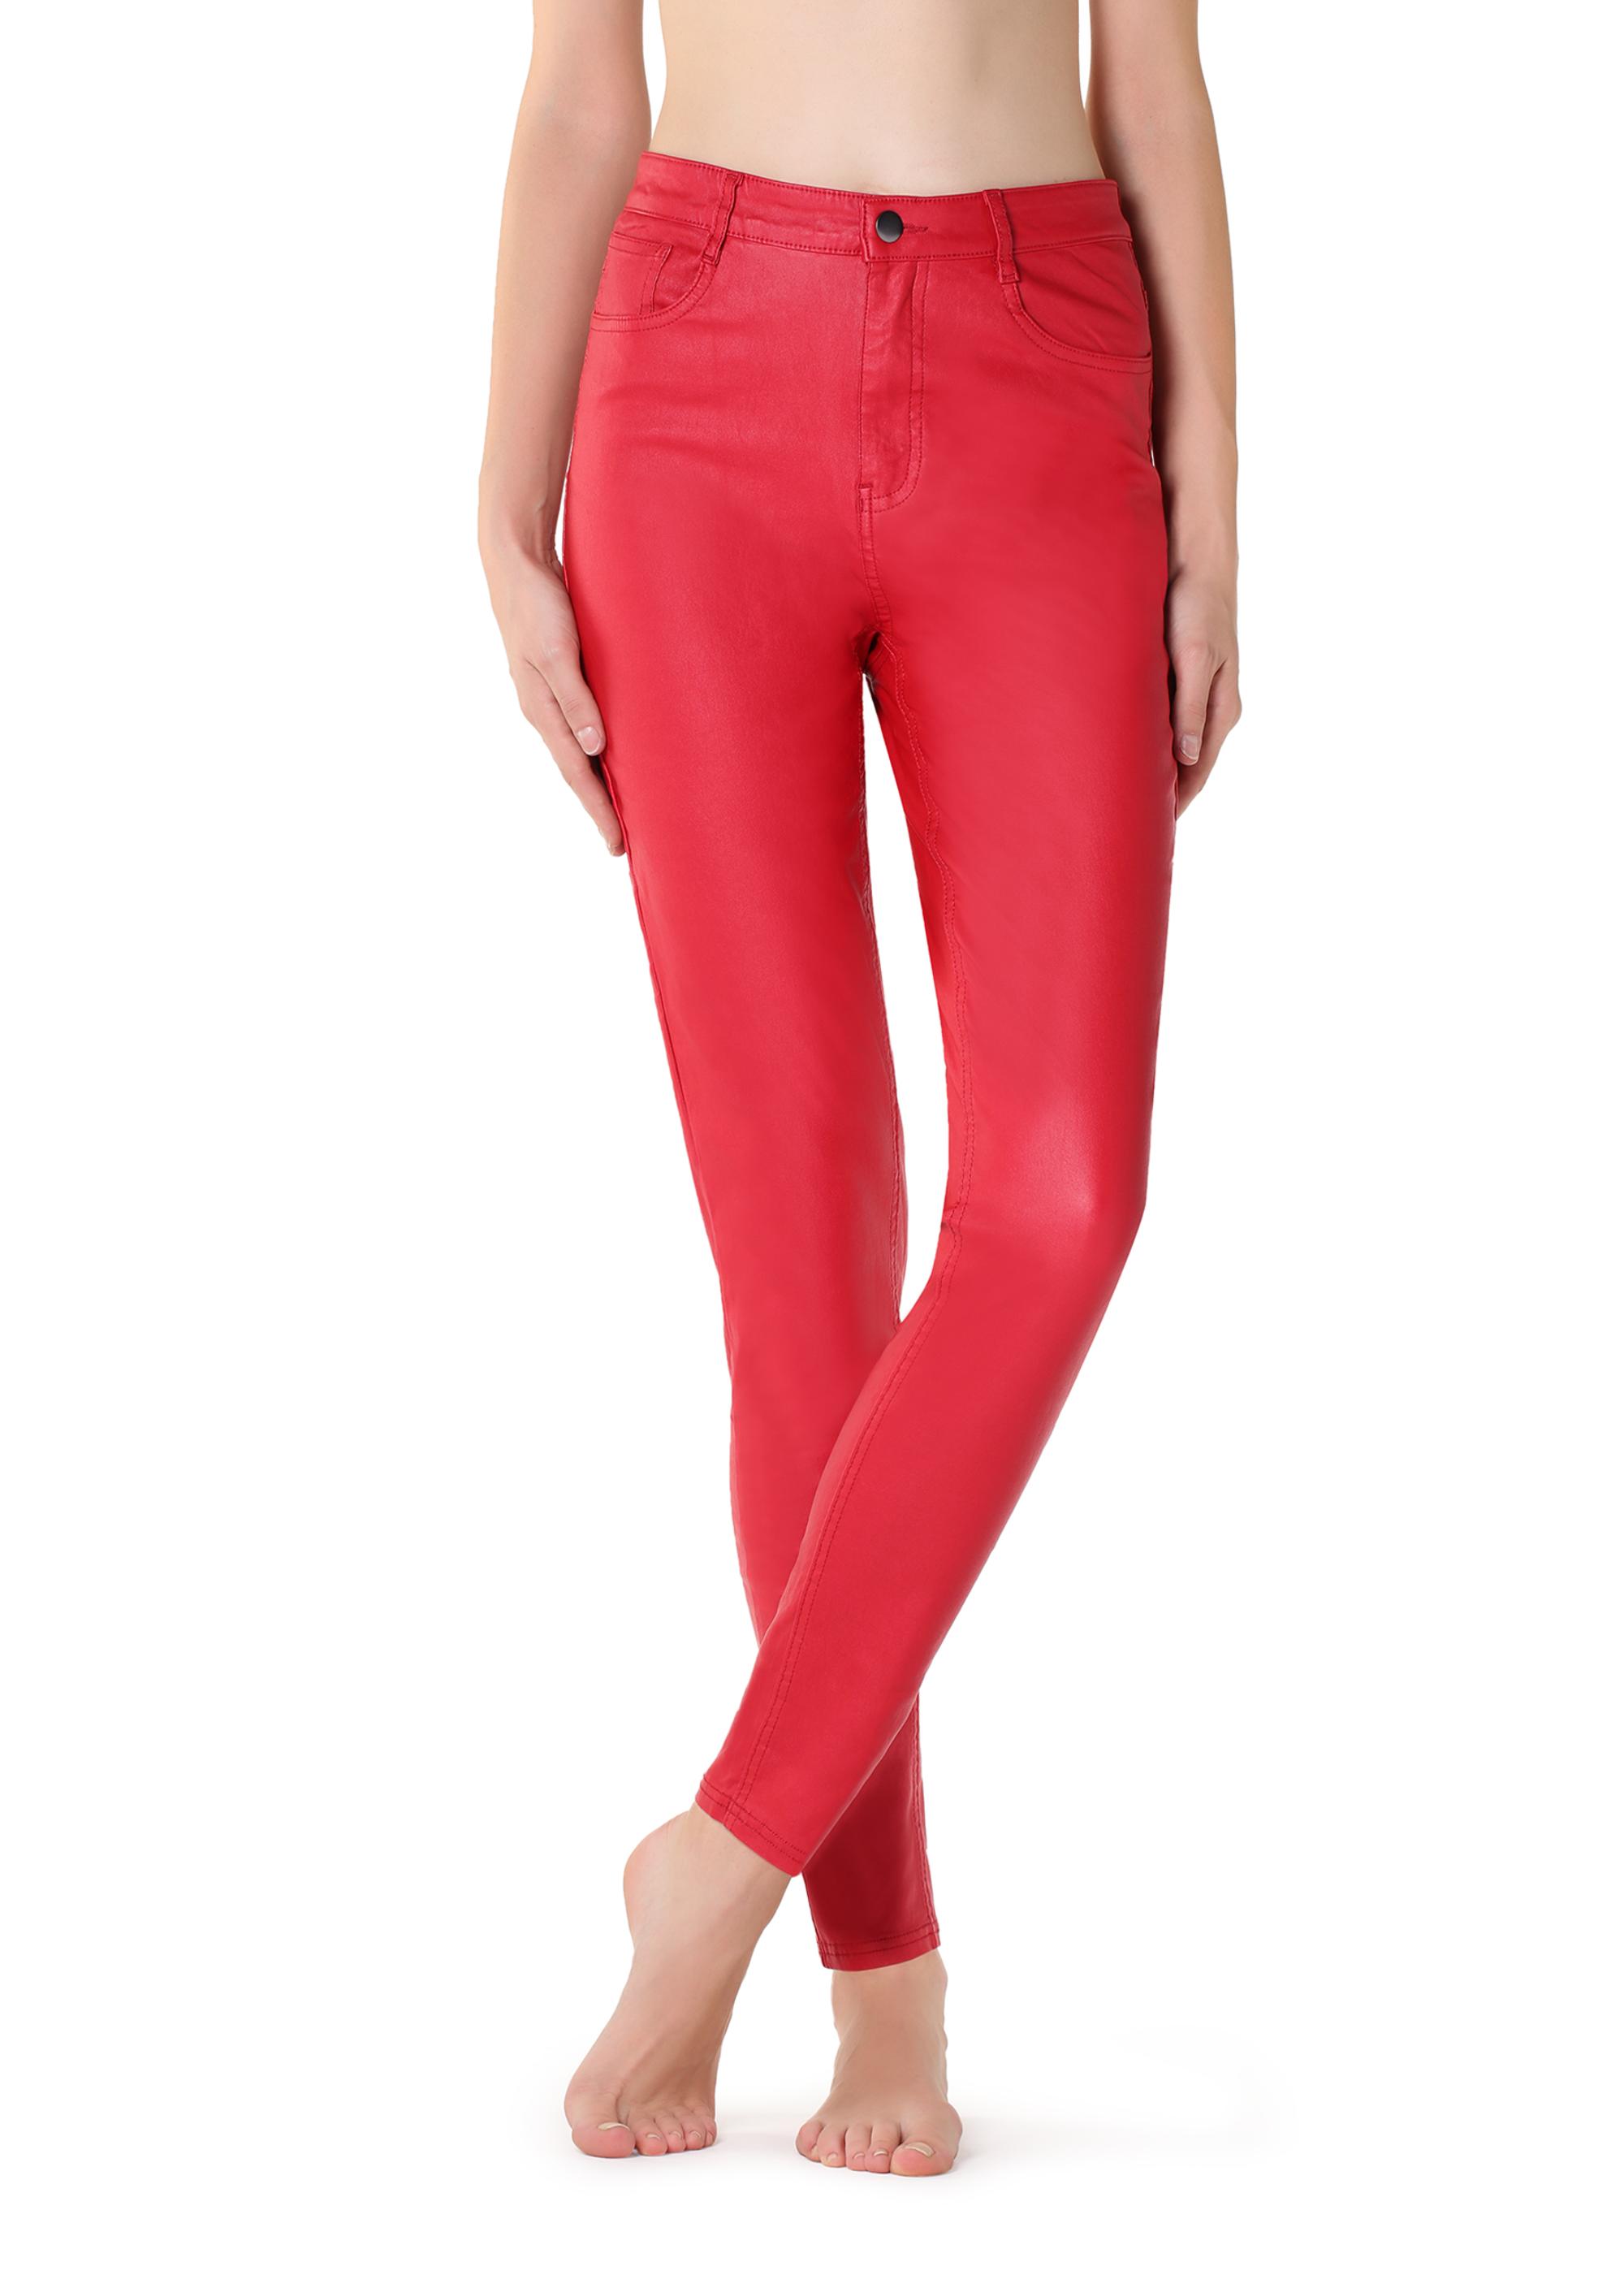 Pantaloni effetto pelle rossa Calzedonia tendenze inverno 2019